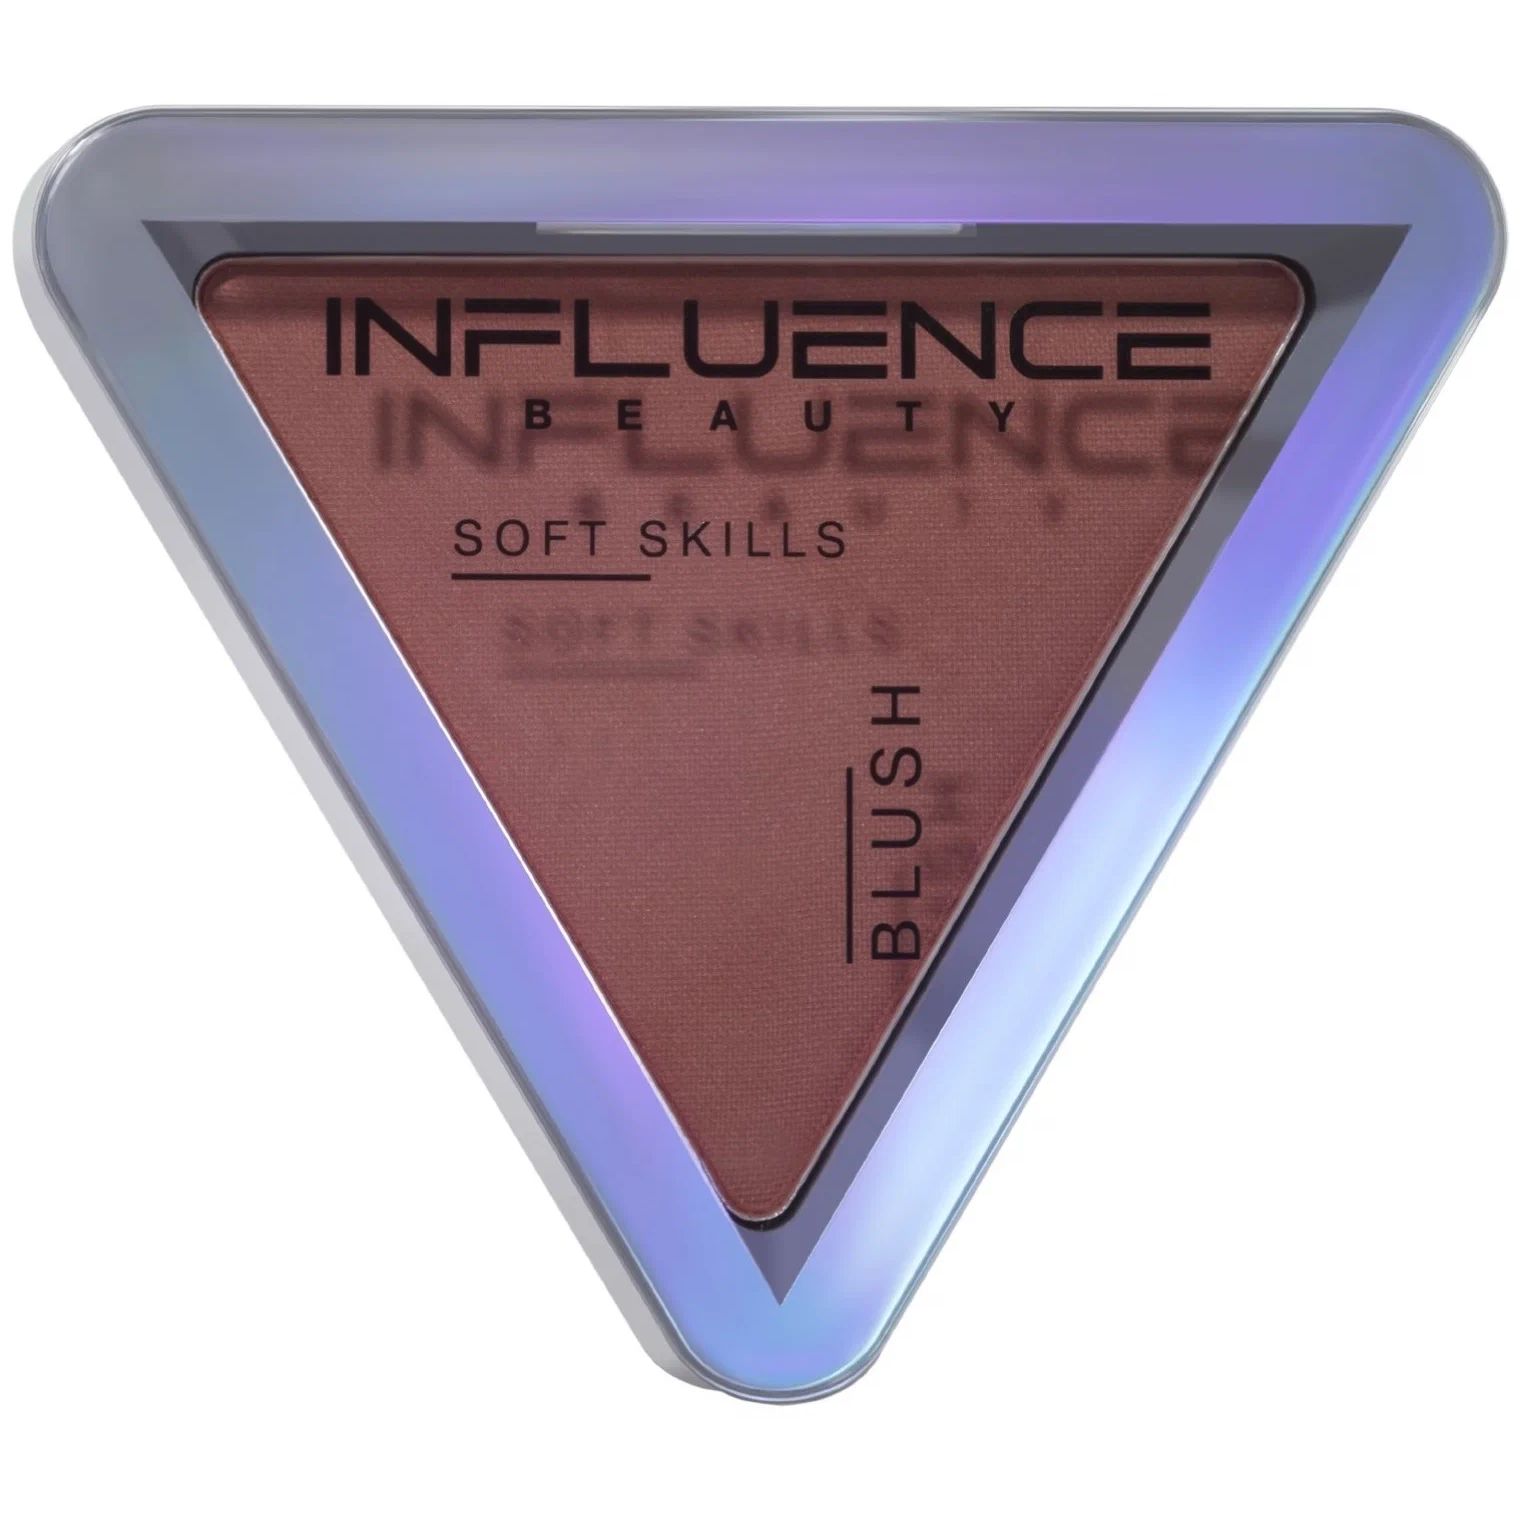 Румяна для лица Influence Beauty Soft skills компактные тон 05 3 г концепция формирования soft skills выпускников вузов